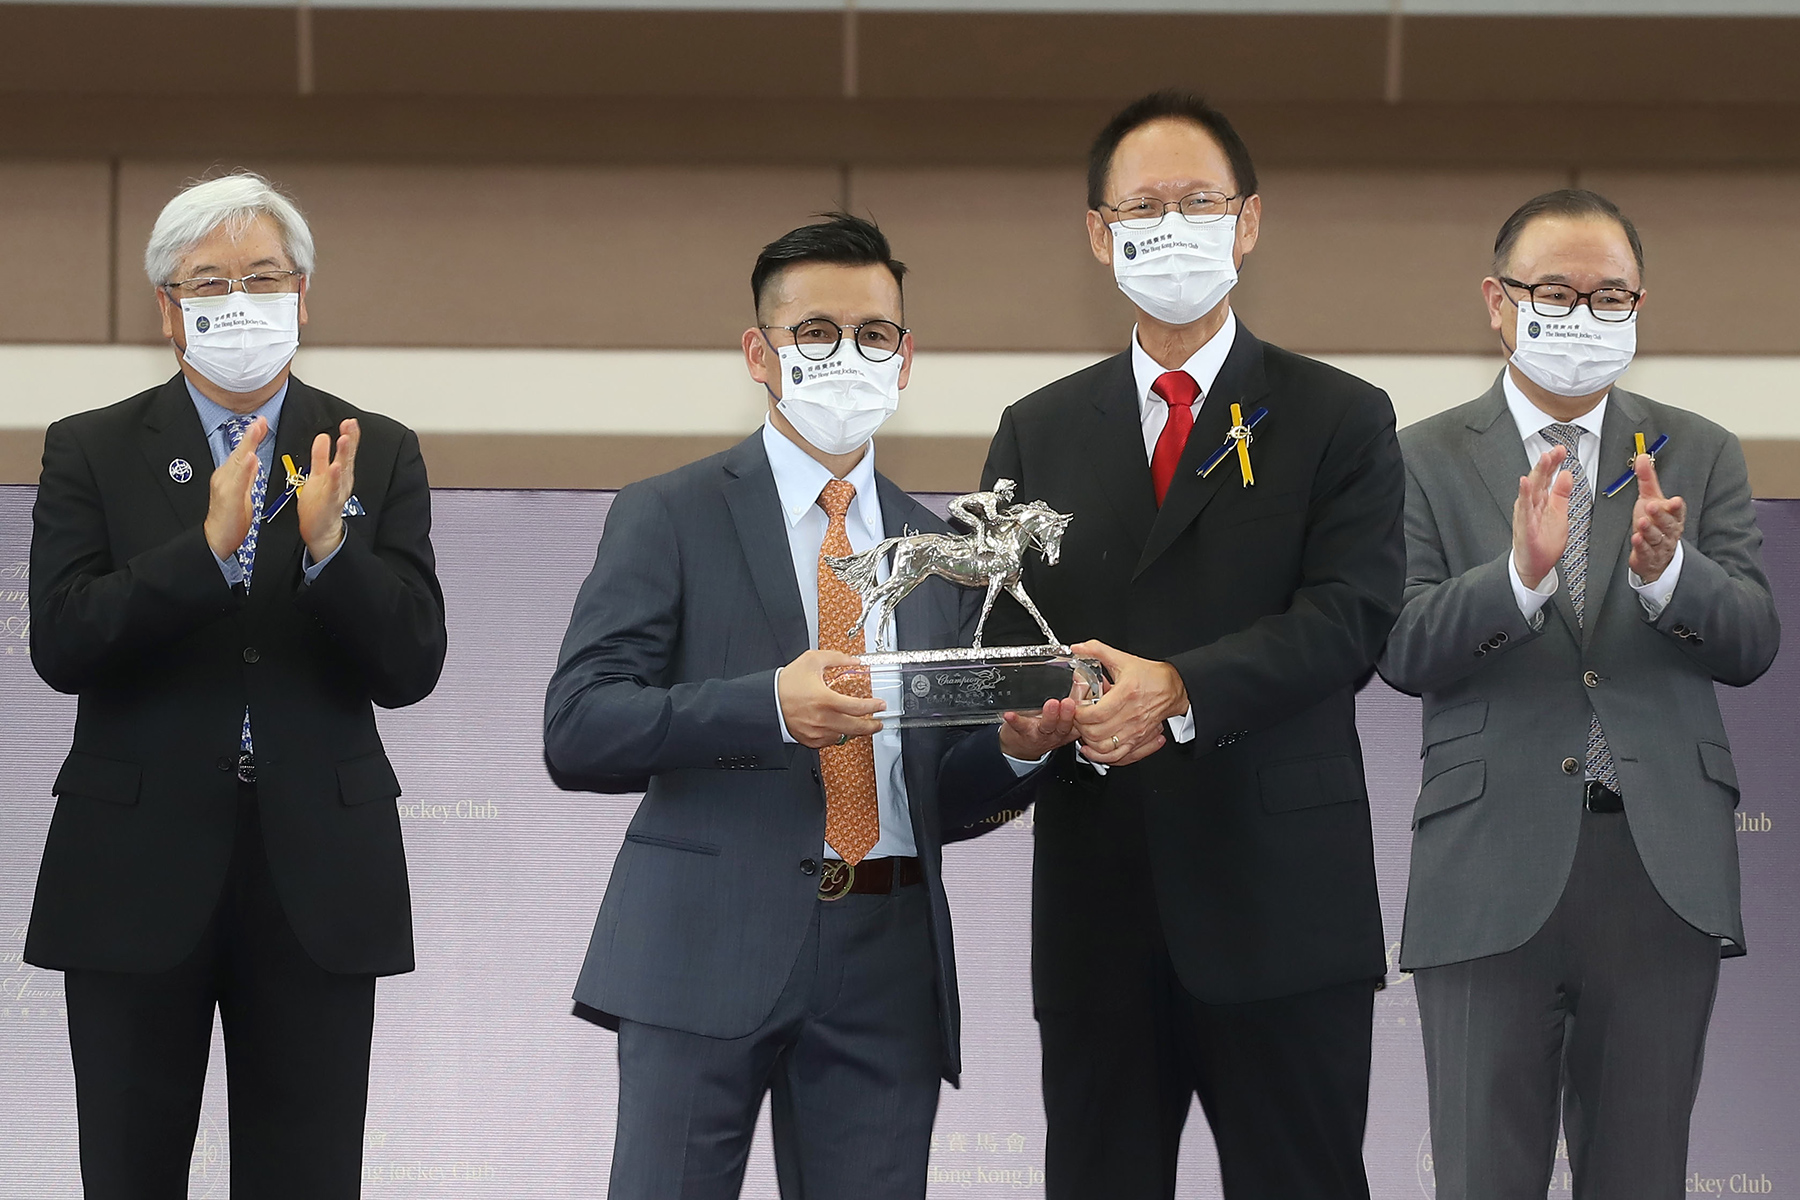 香港賽馬會主席陳南祿頒發冠軍練馬師獎座予羅富全。